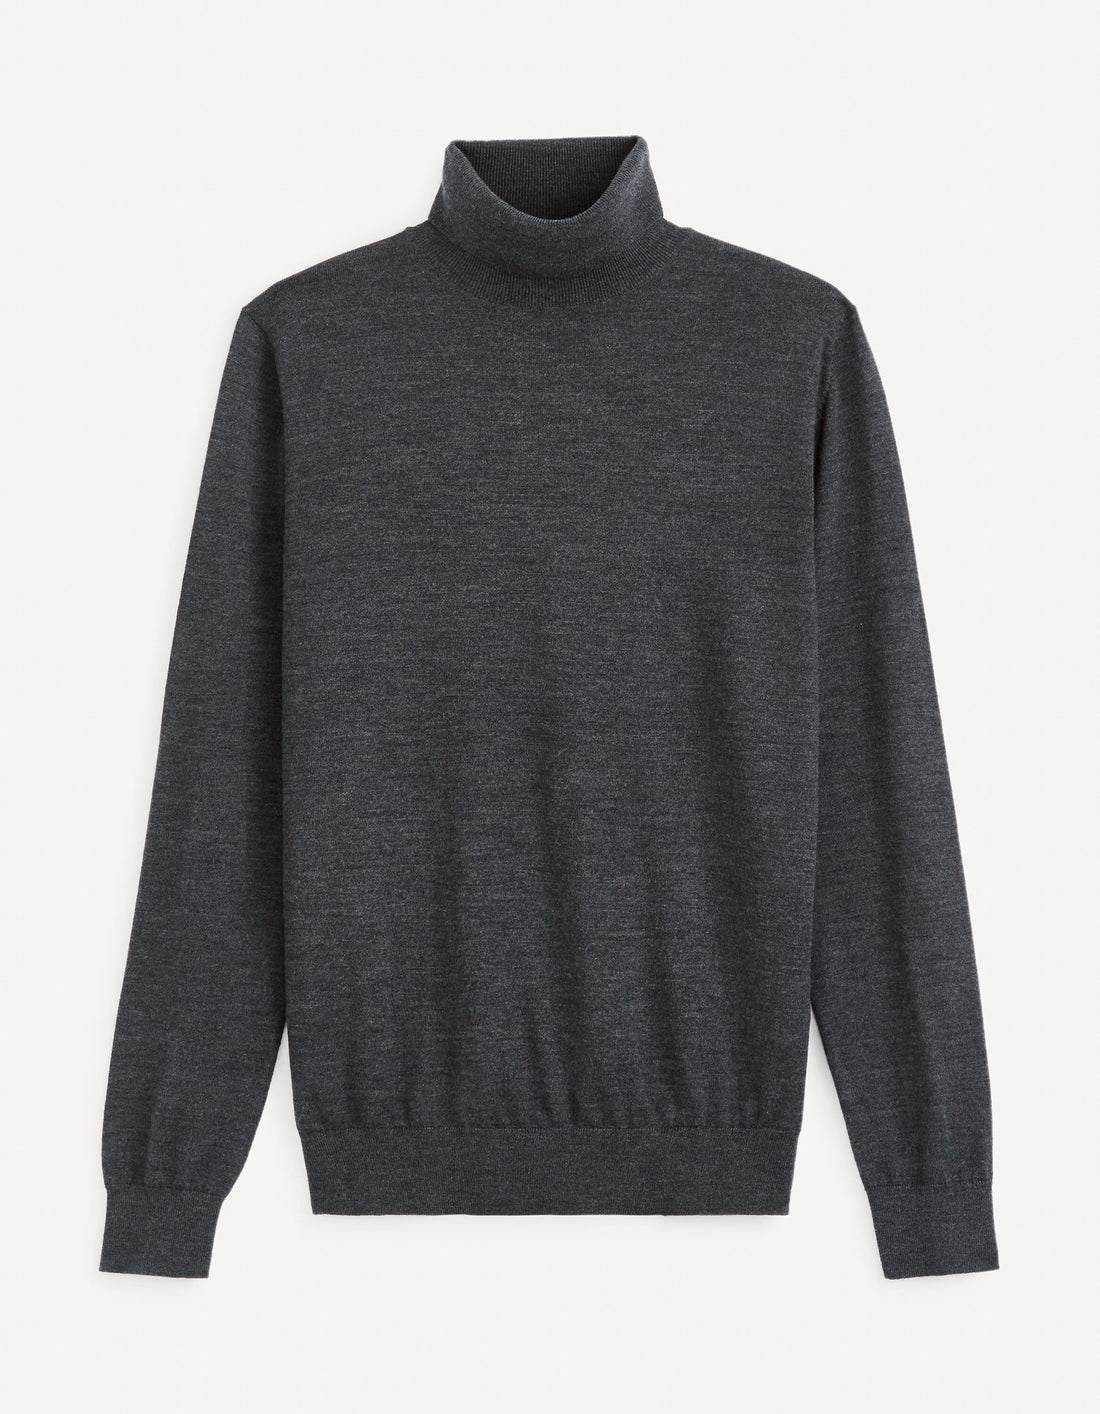 Turtleneck Sweater 100% Merino Wool_MENOS_ANTHRA MEL_02